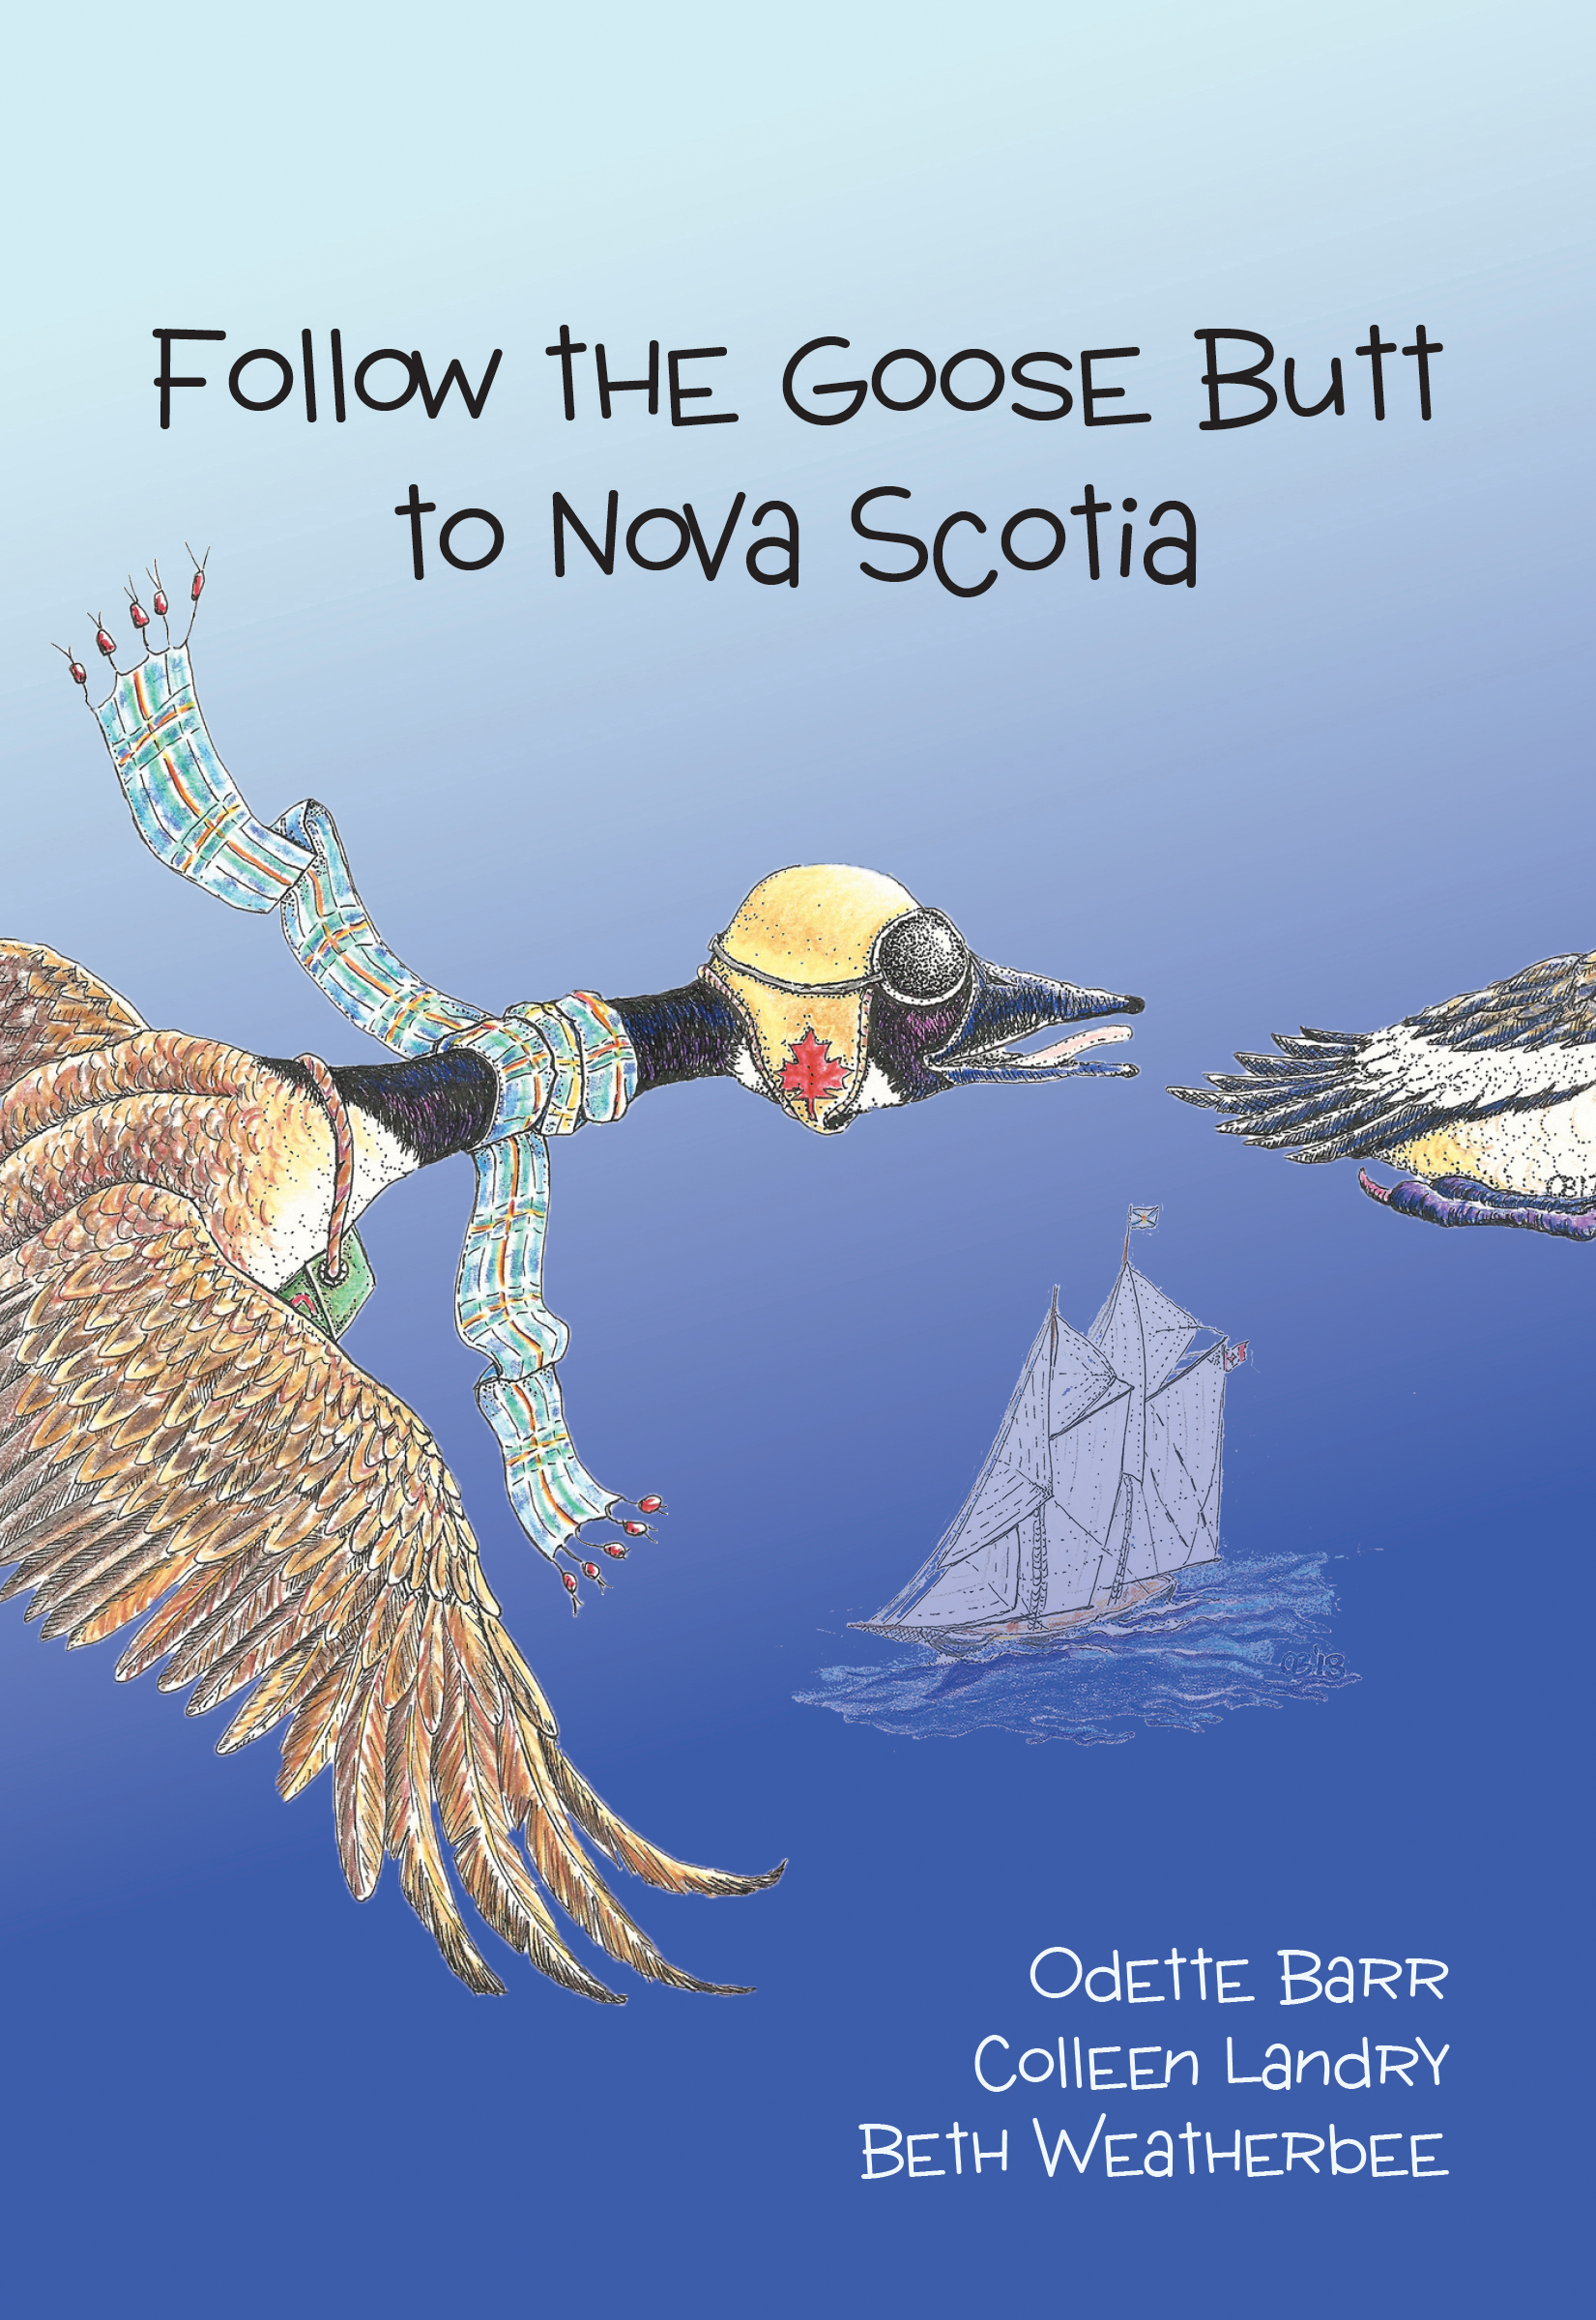 Follow the Goose Butt to Nova Scotia